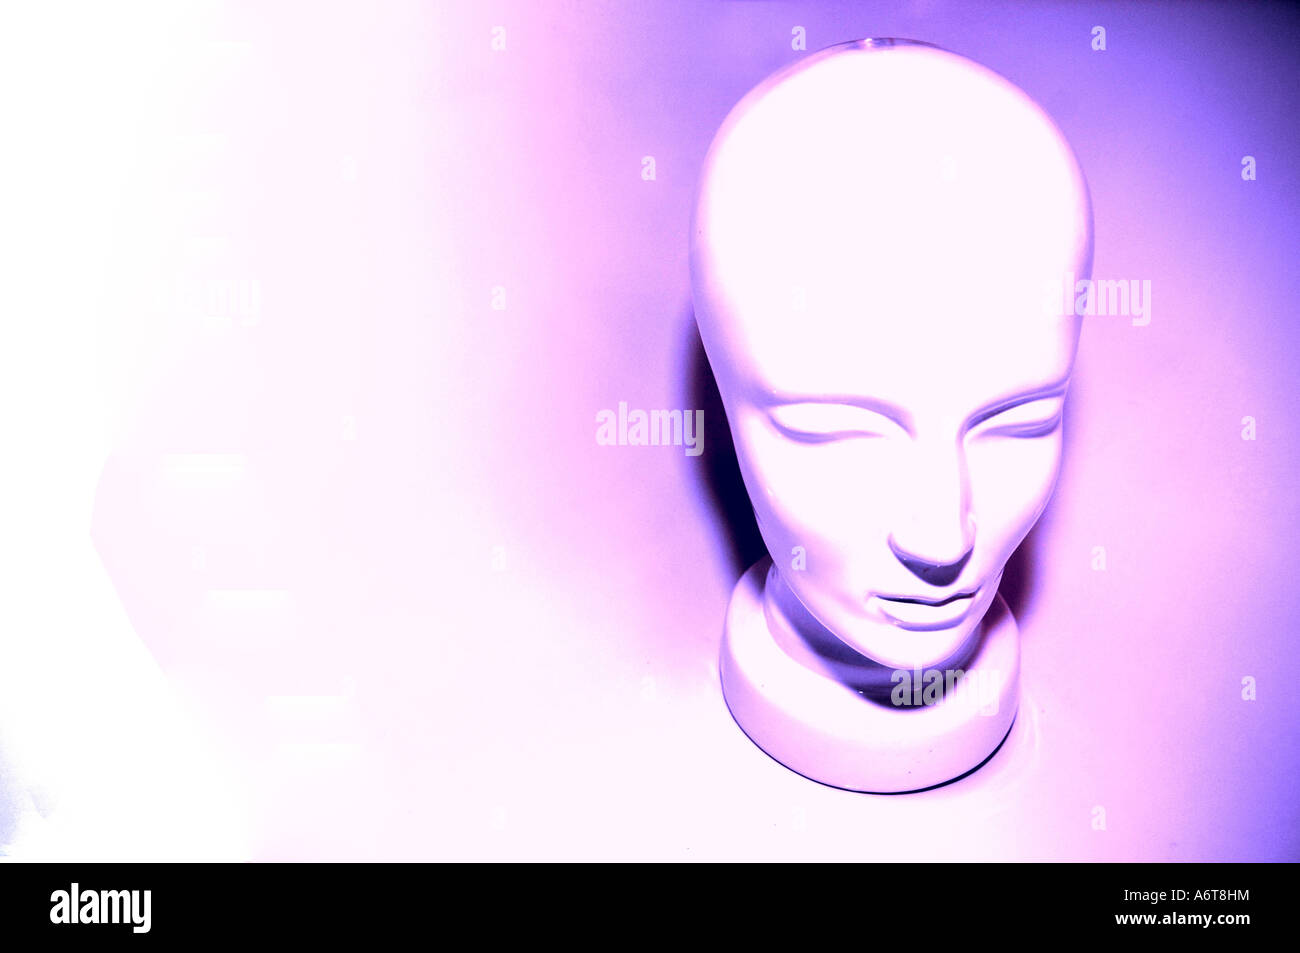 einem einziges Kopf Gesicht verbunden verknüpften geklonten Klone Klonen zukünftige futuristische Sci-Fi-Science-Fiction surreale horizontale Farbe c Stockfoto